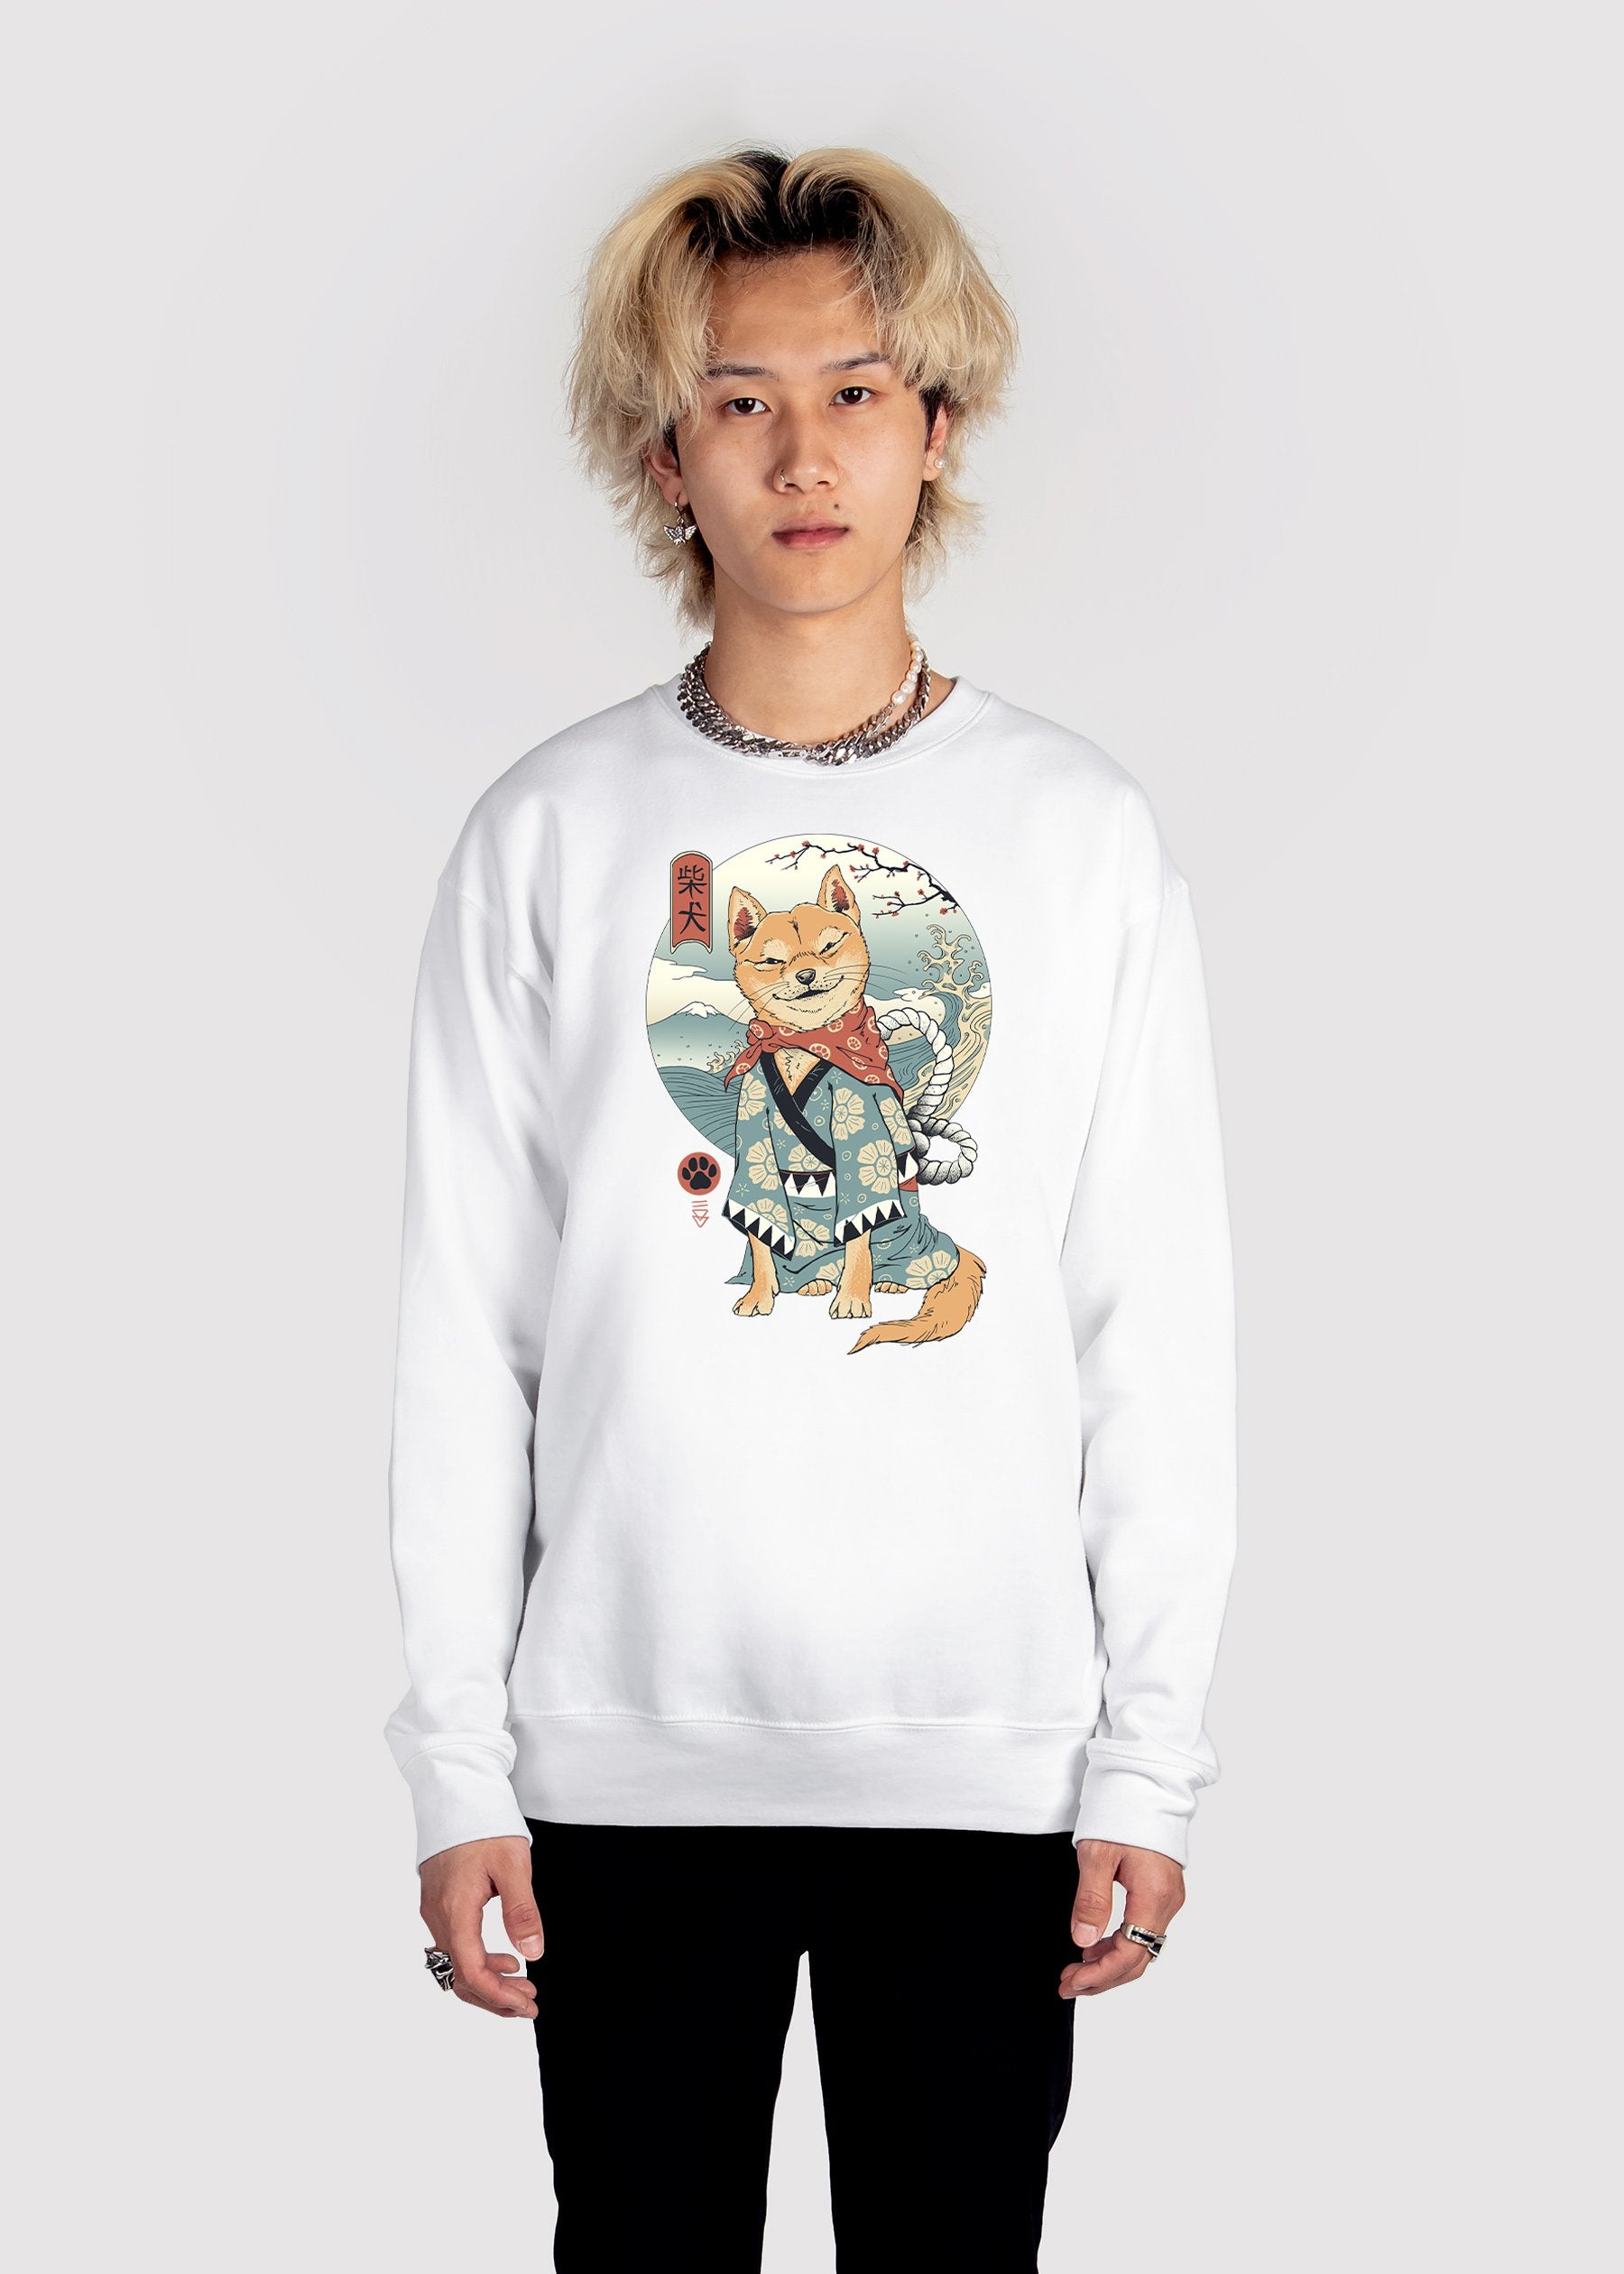 Zen Shiba Sweatshirt Graphic Sweatshirt Vapor95 White S